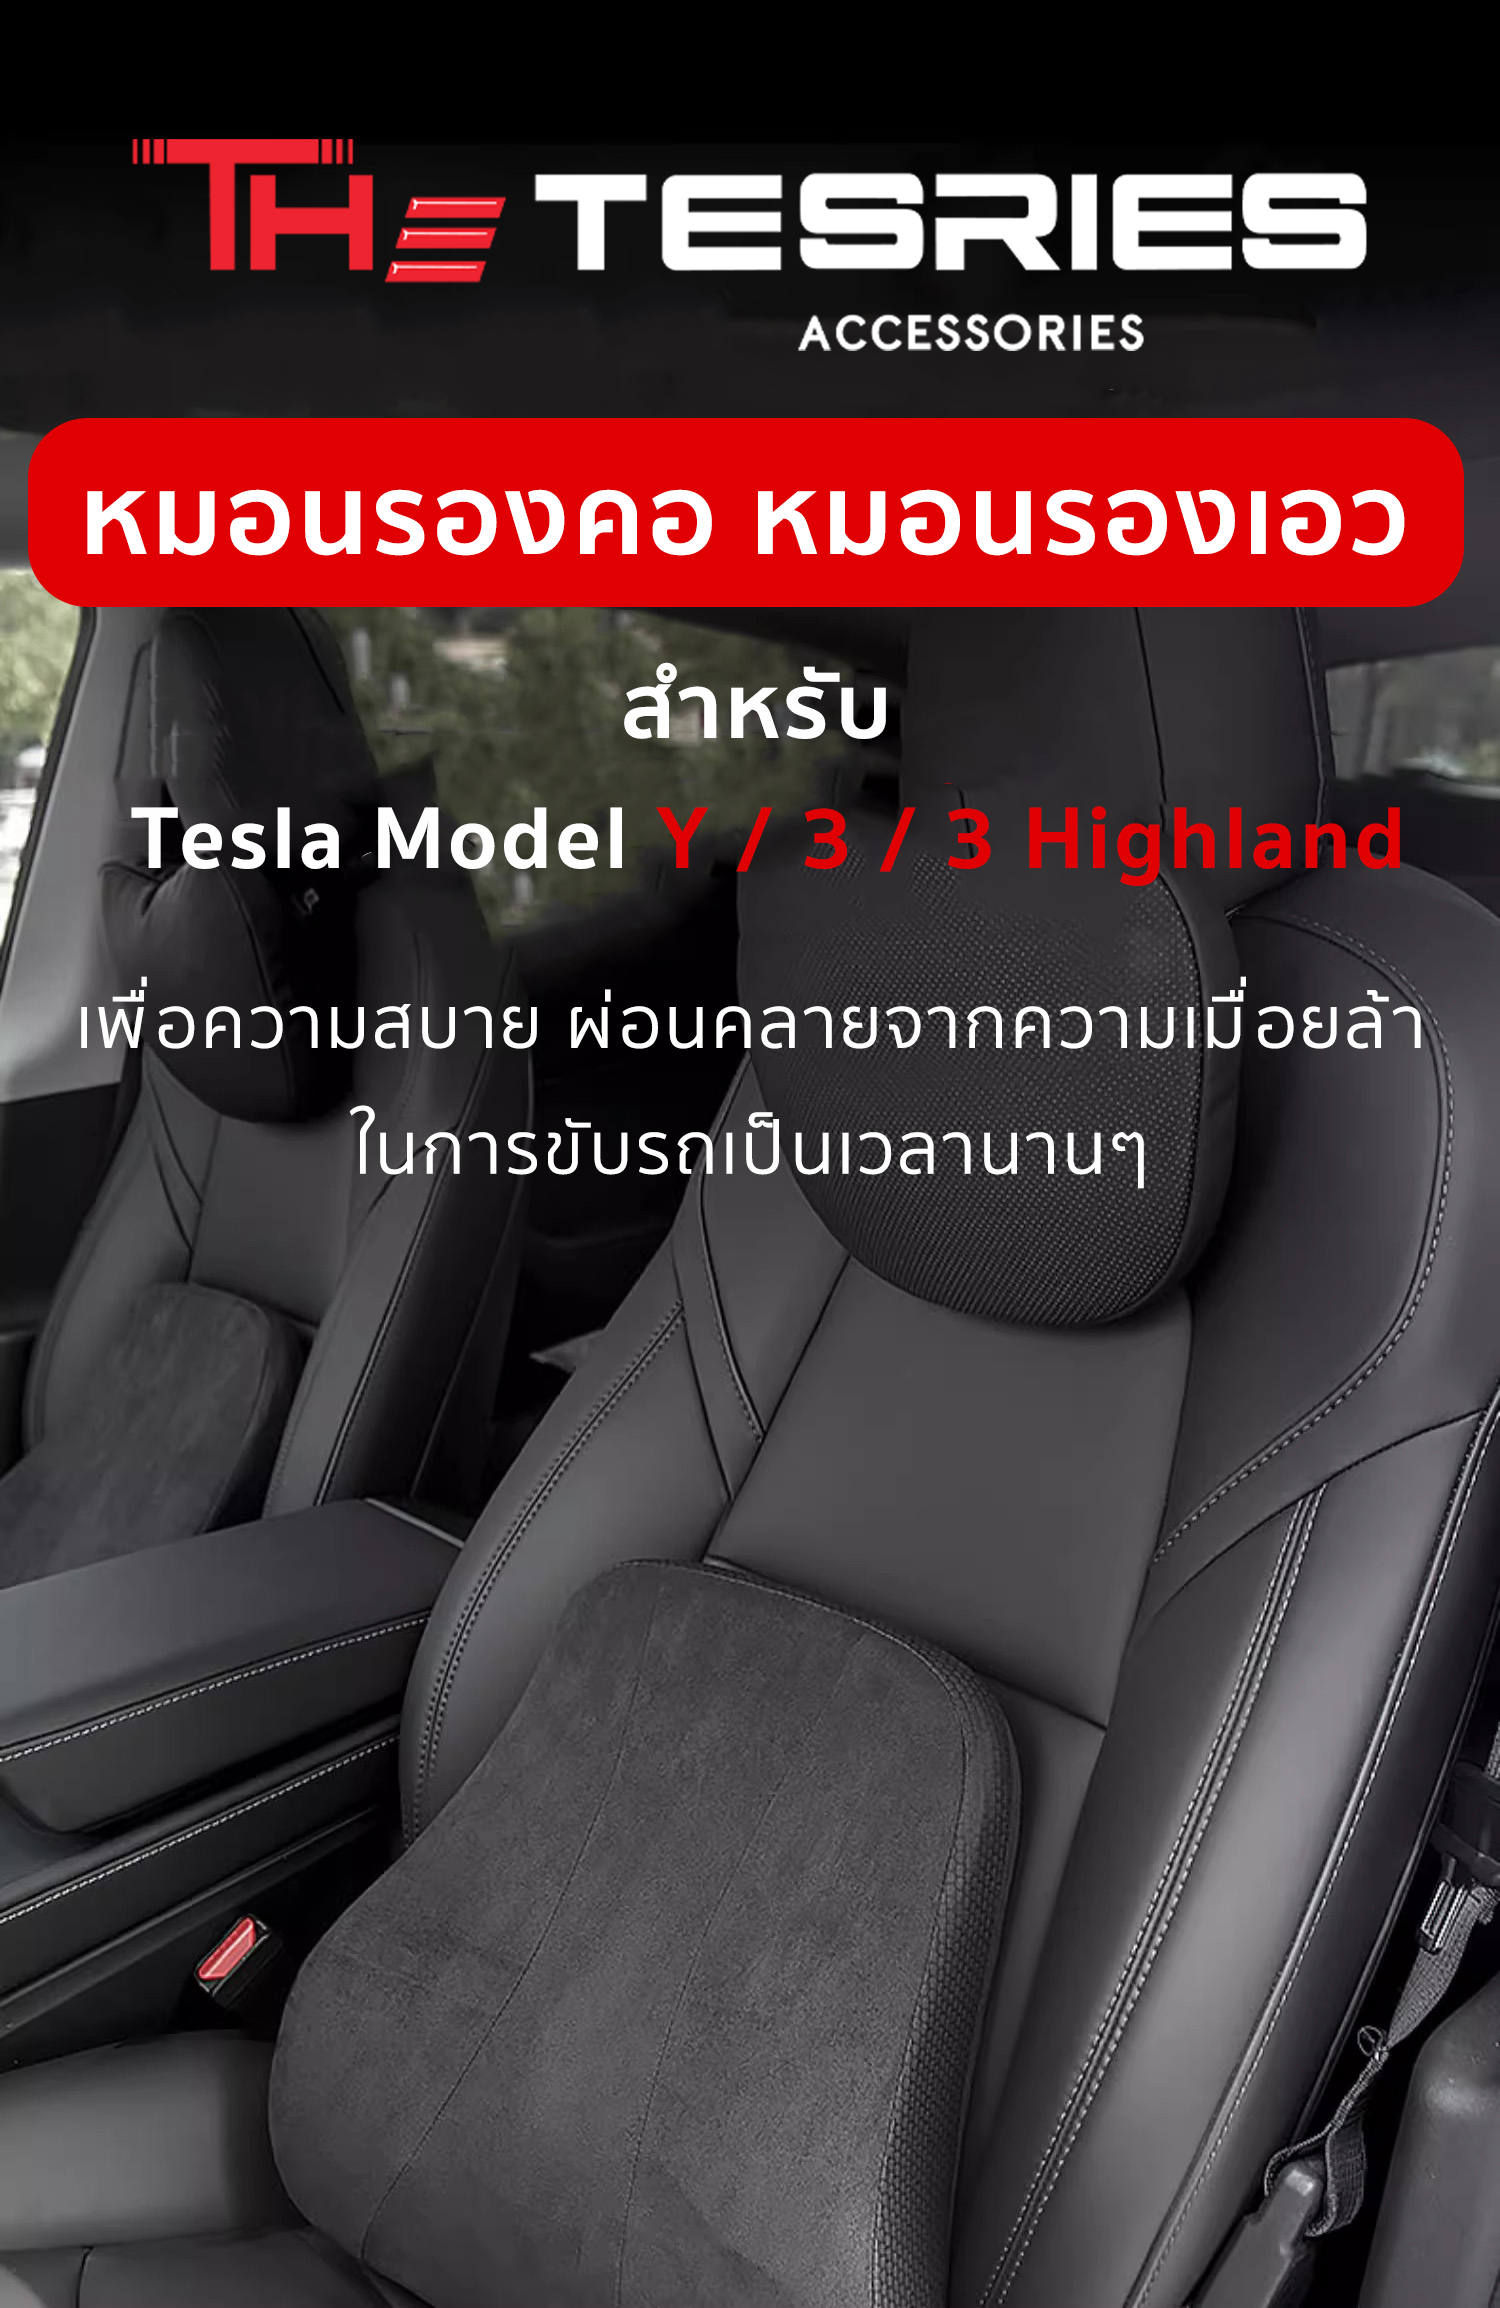 Tesla กล่องเก็บของ บริเวณคอนโซลกลาง/ที่พักแขน สำหรับ Model 3 Highland  พร้อมช่องสอดสายชาร์จ - thetesries